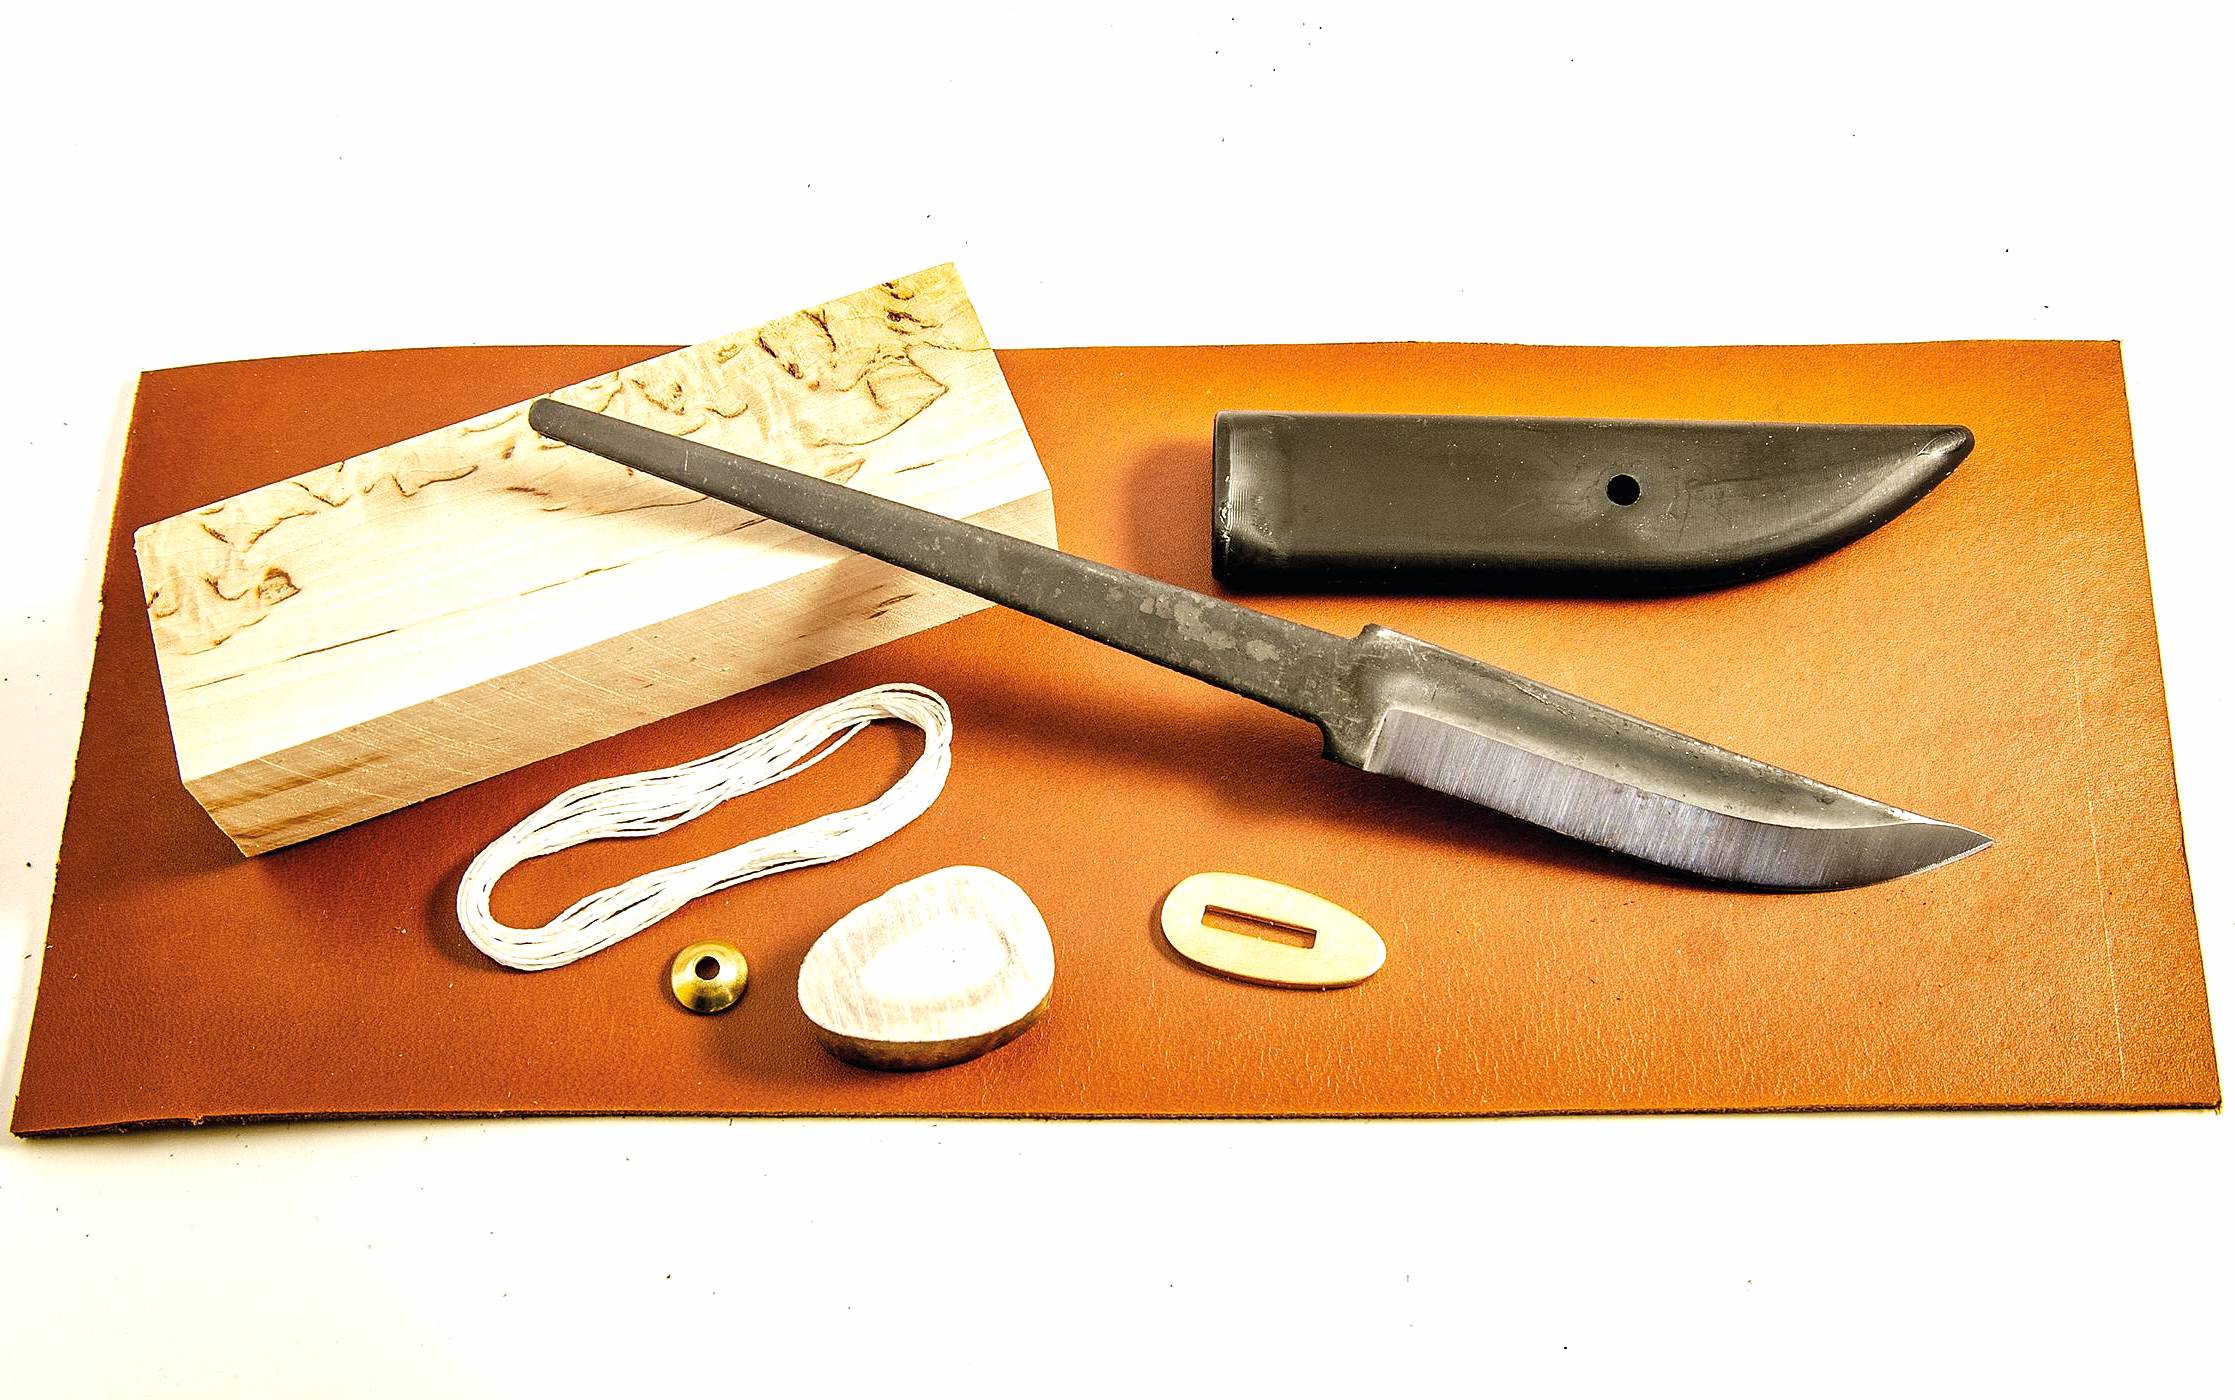 https://silodrome.com/wp-content/uploads/2022/03/Casstrom-Sweden-Scandi-Knife-Making-Kit.jpg